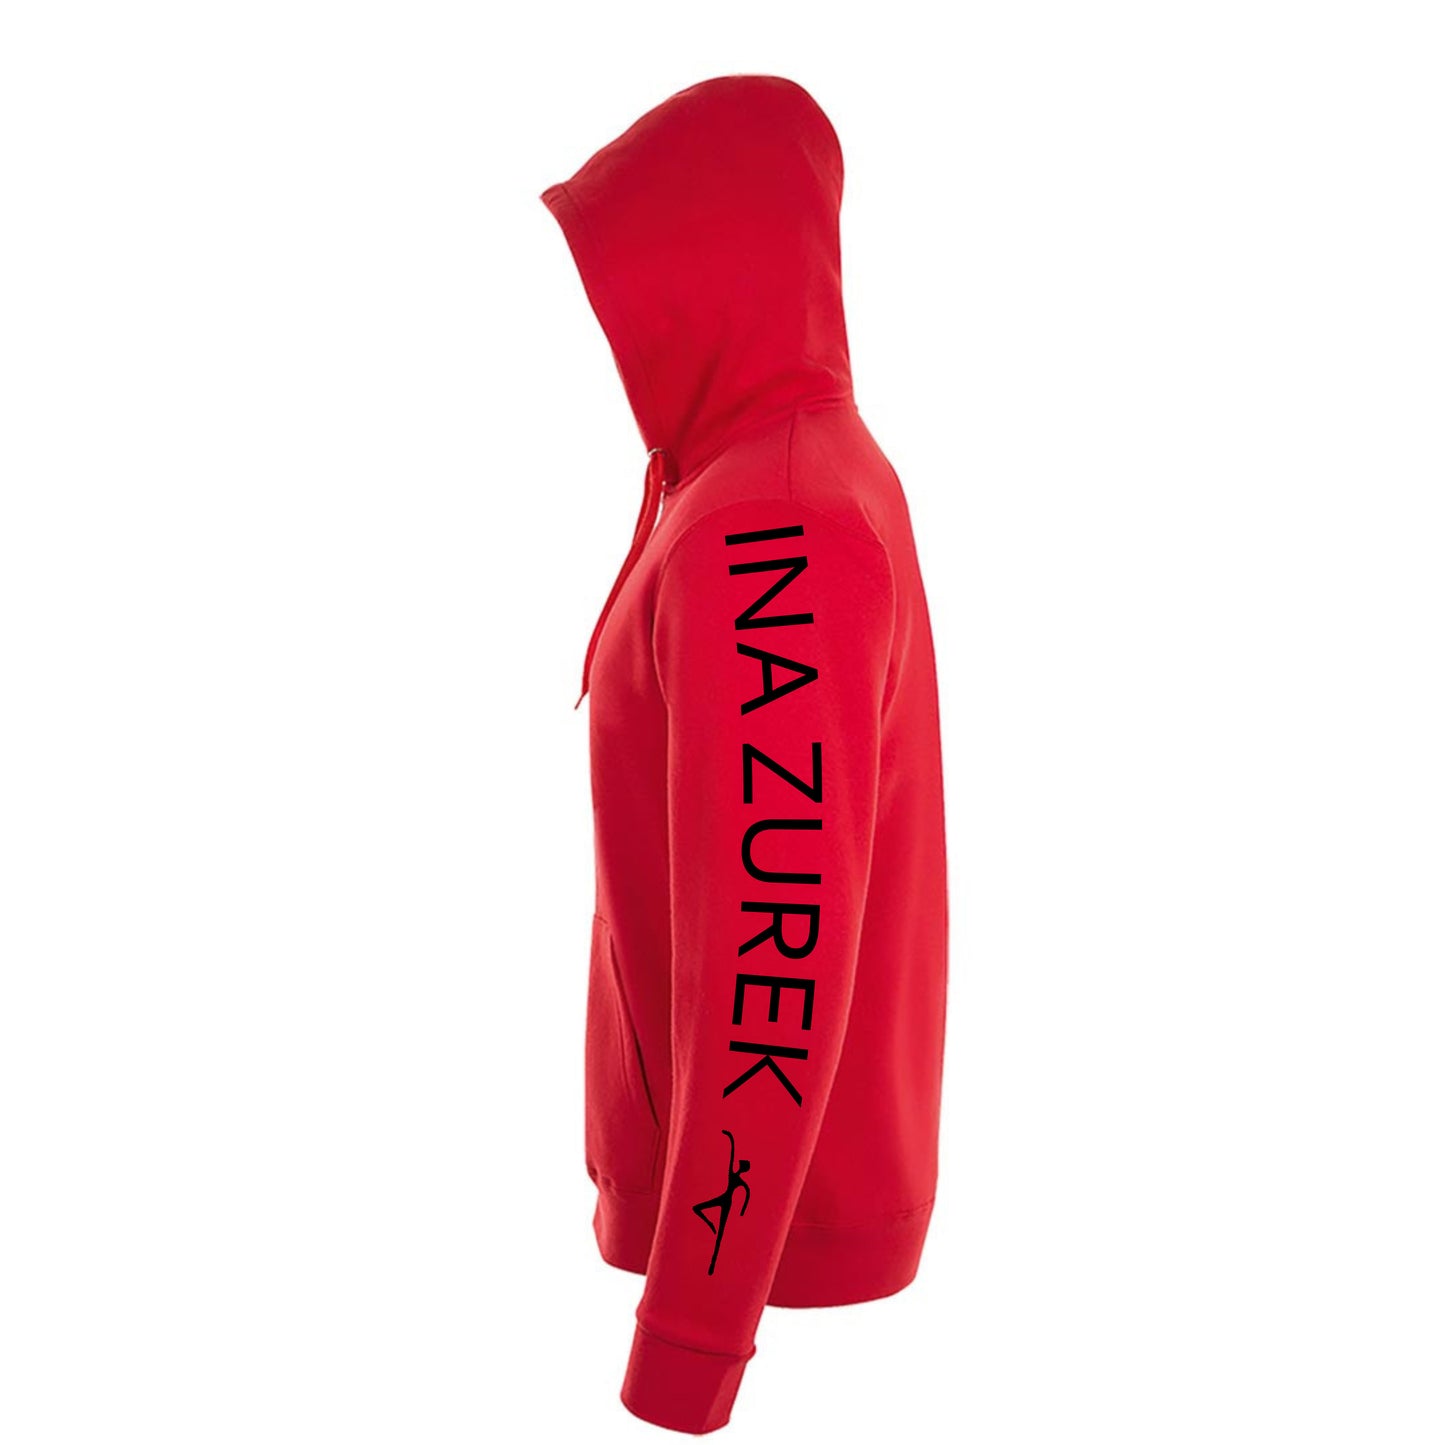 Sweatshirt-Jacke Kids "Ballettschule" rot mit schwarzem Druck